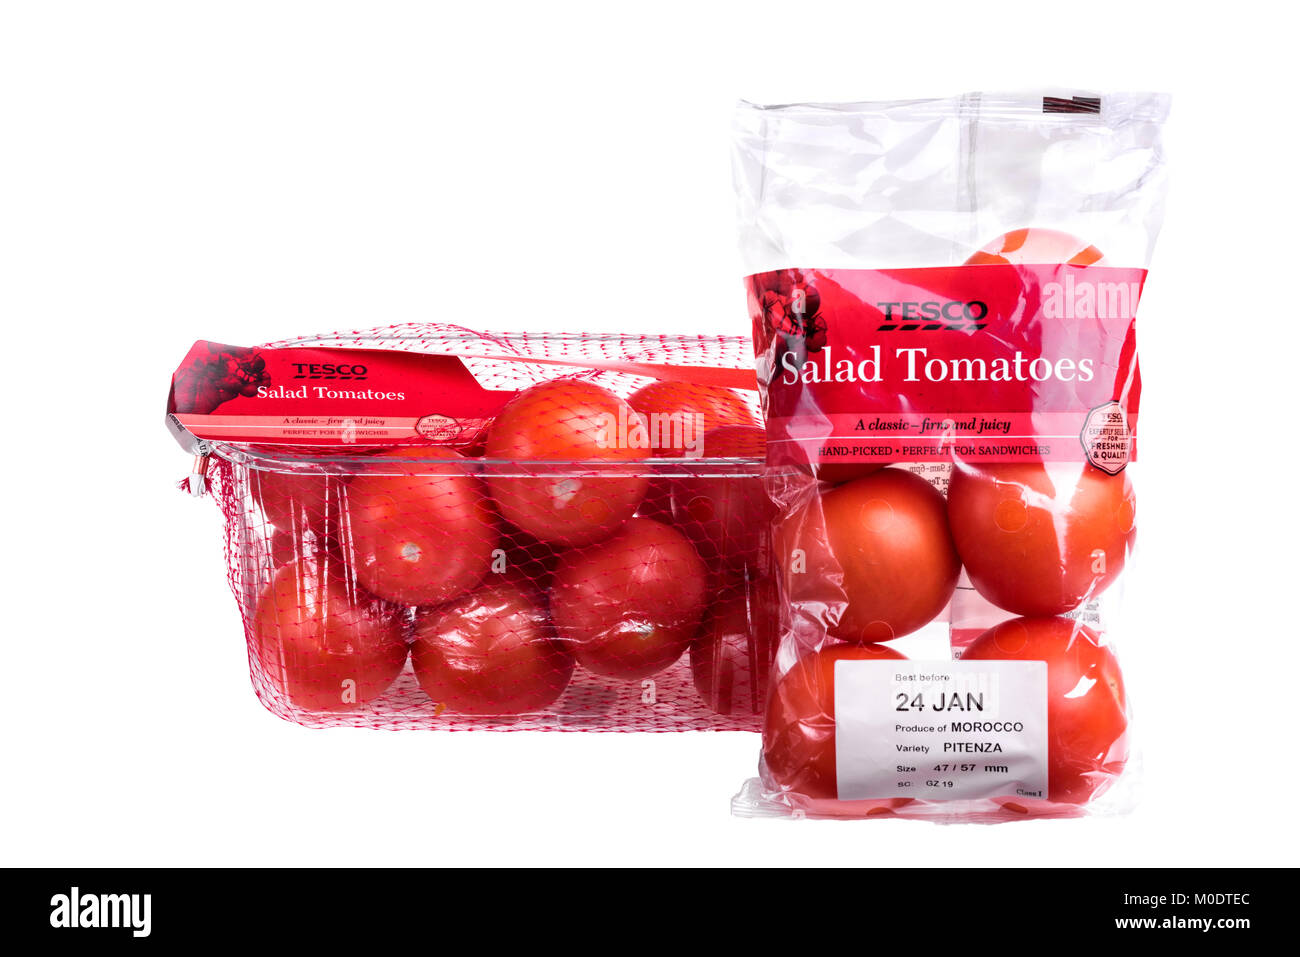 Tesco pomodori da insalata, supermercato degli imballaggi in plastica. Foto Stock